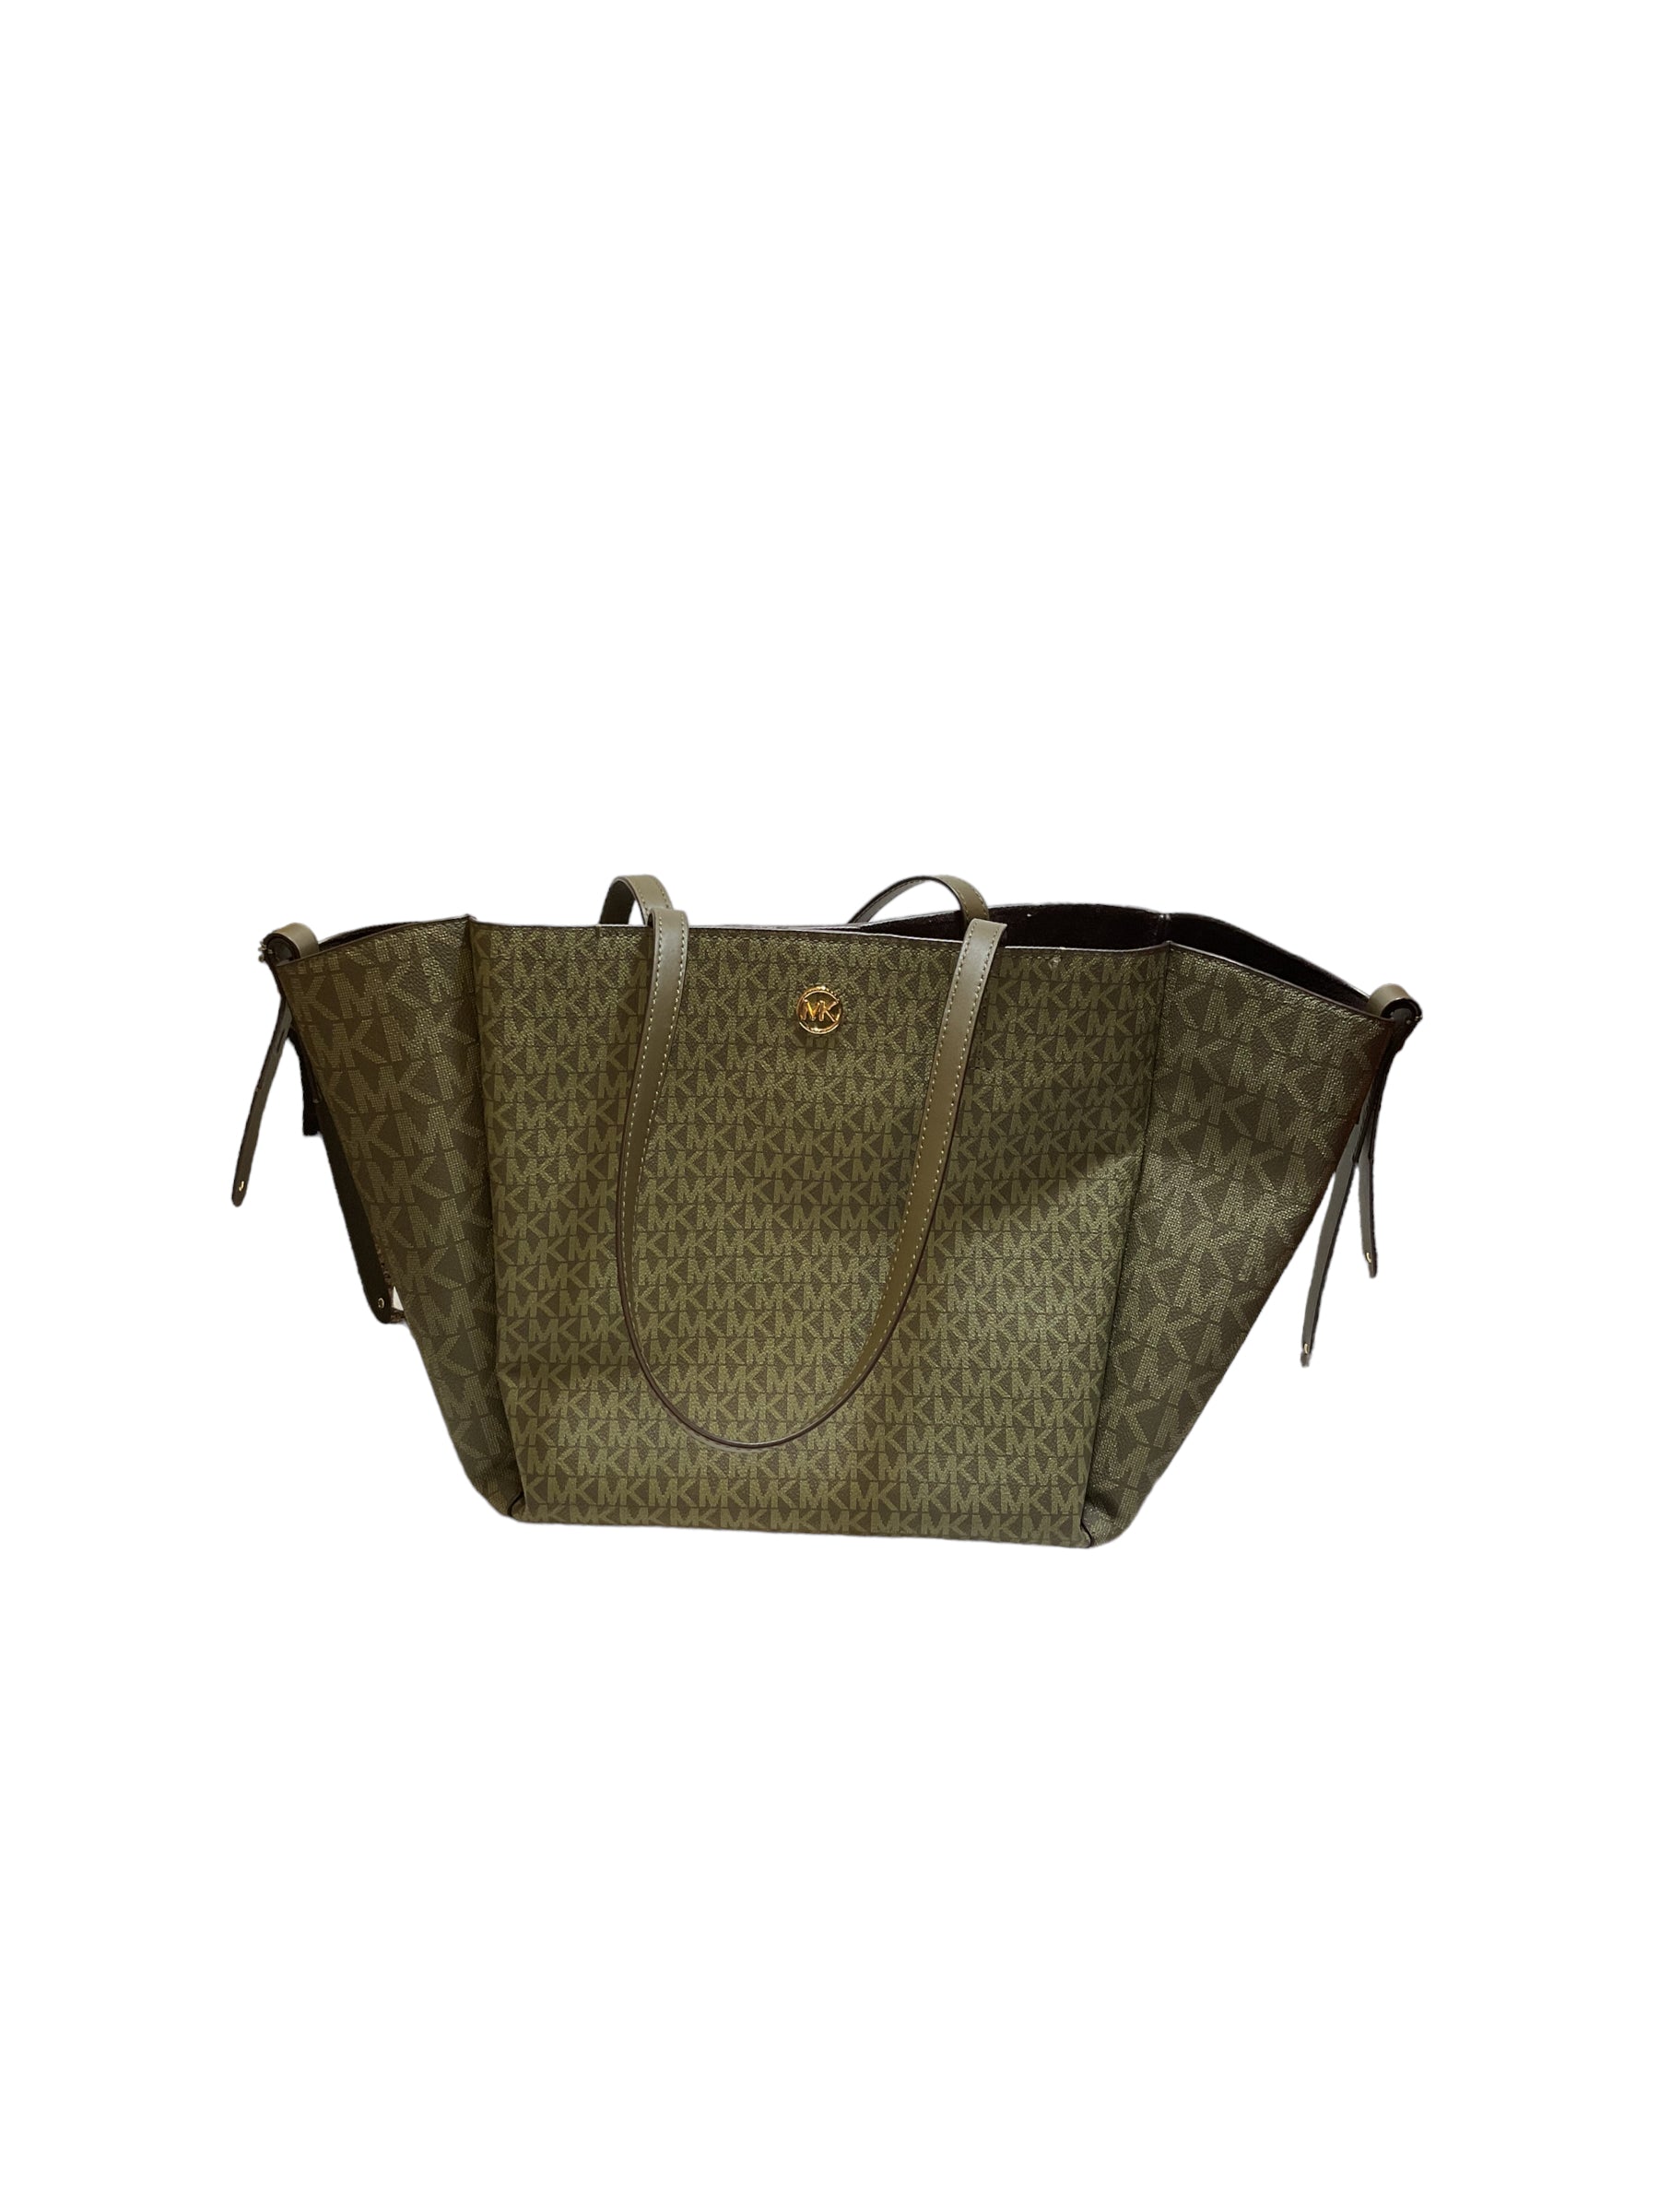 Michael Kors, Bags, Michael Kors Large Designer Handbag